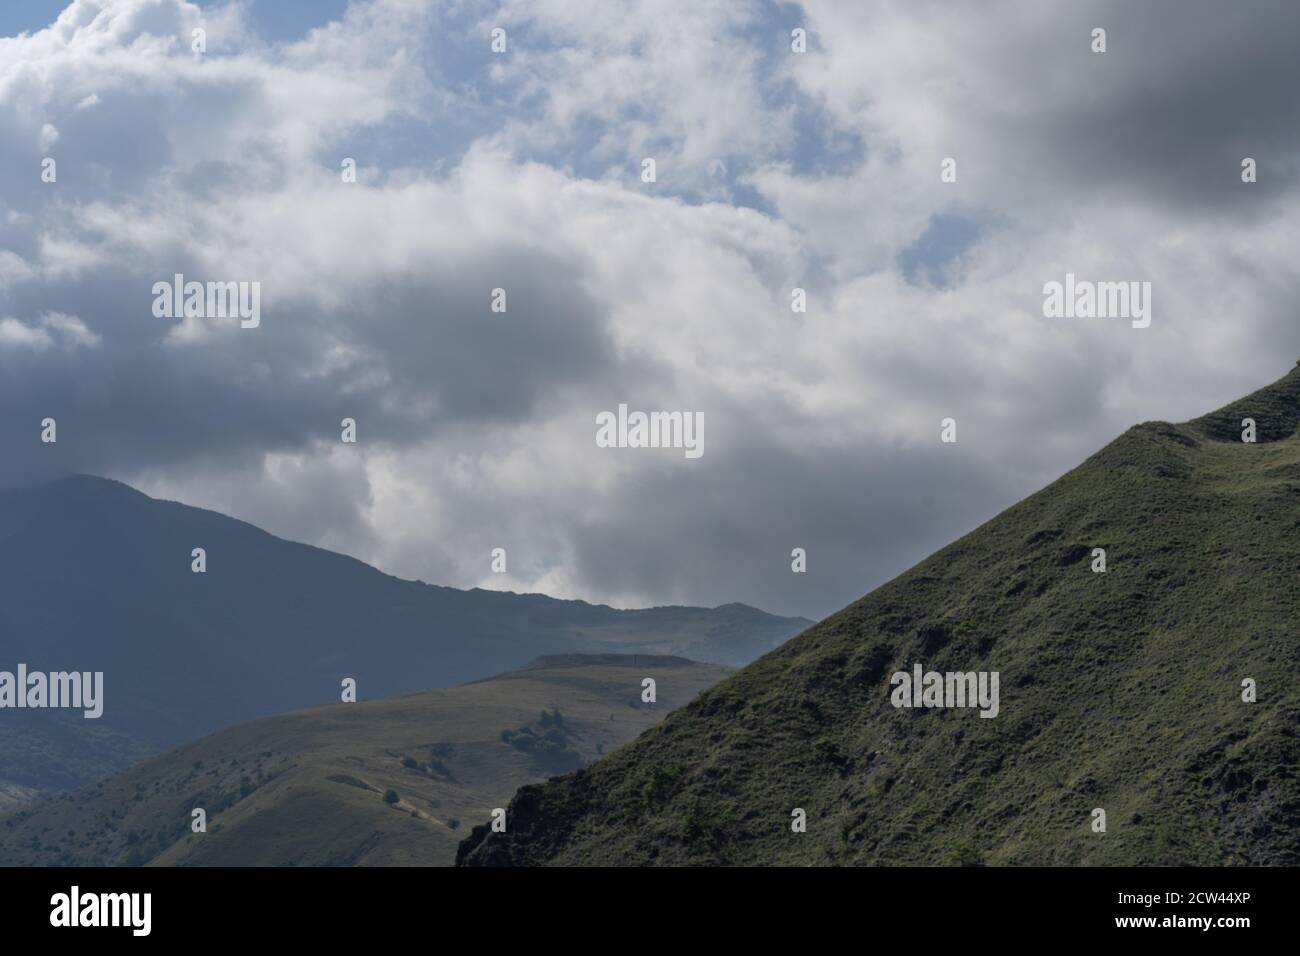 Cime di montagna contro cielo nuvoloso. Picchi di magnifiche rocce situate contro il cielo nuvoloso e luminoso Foto Stock